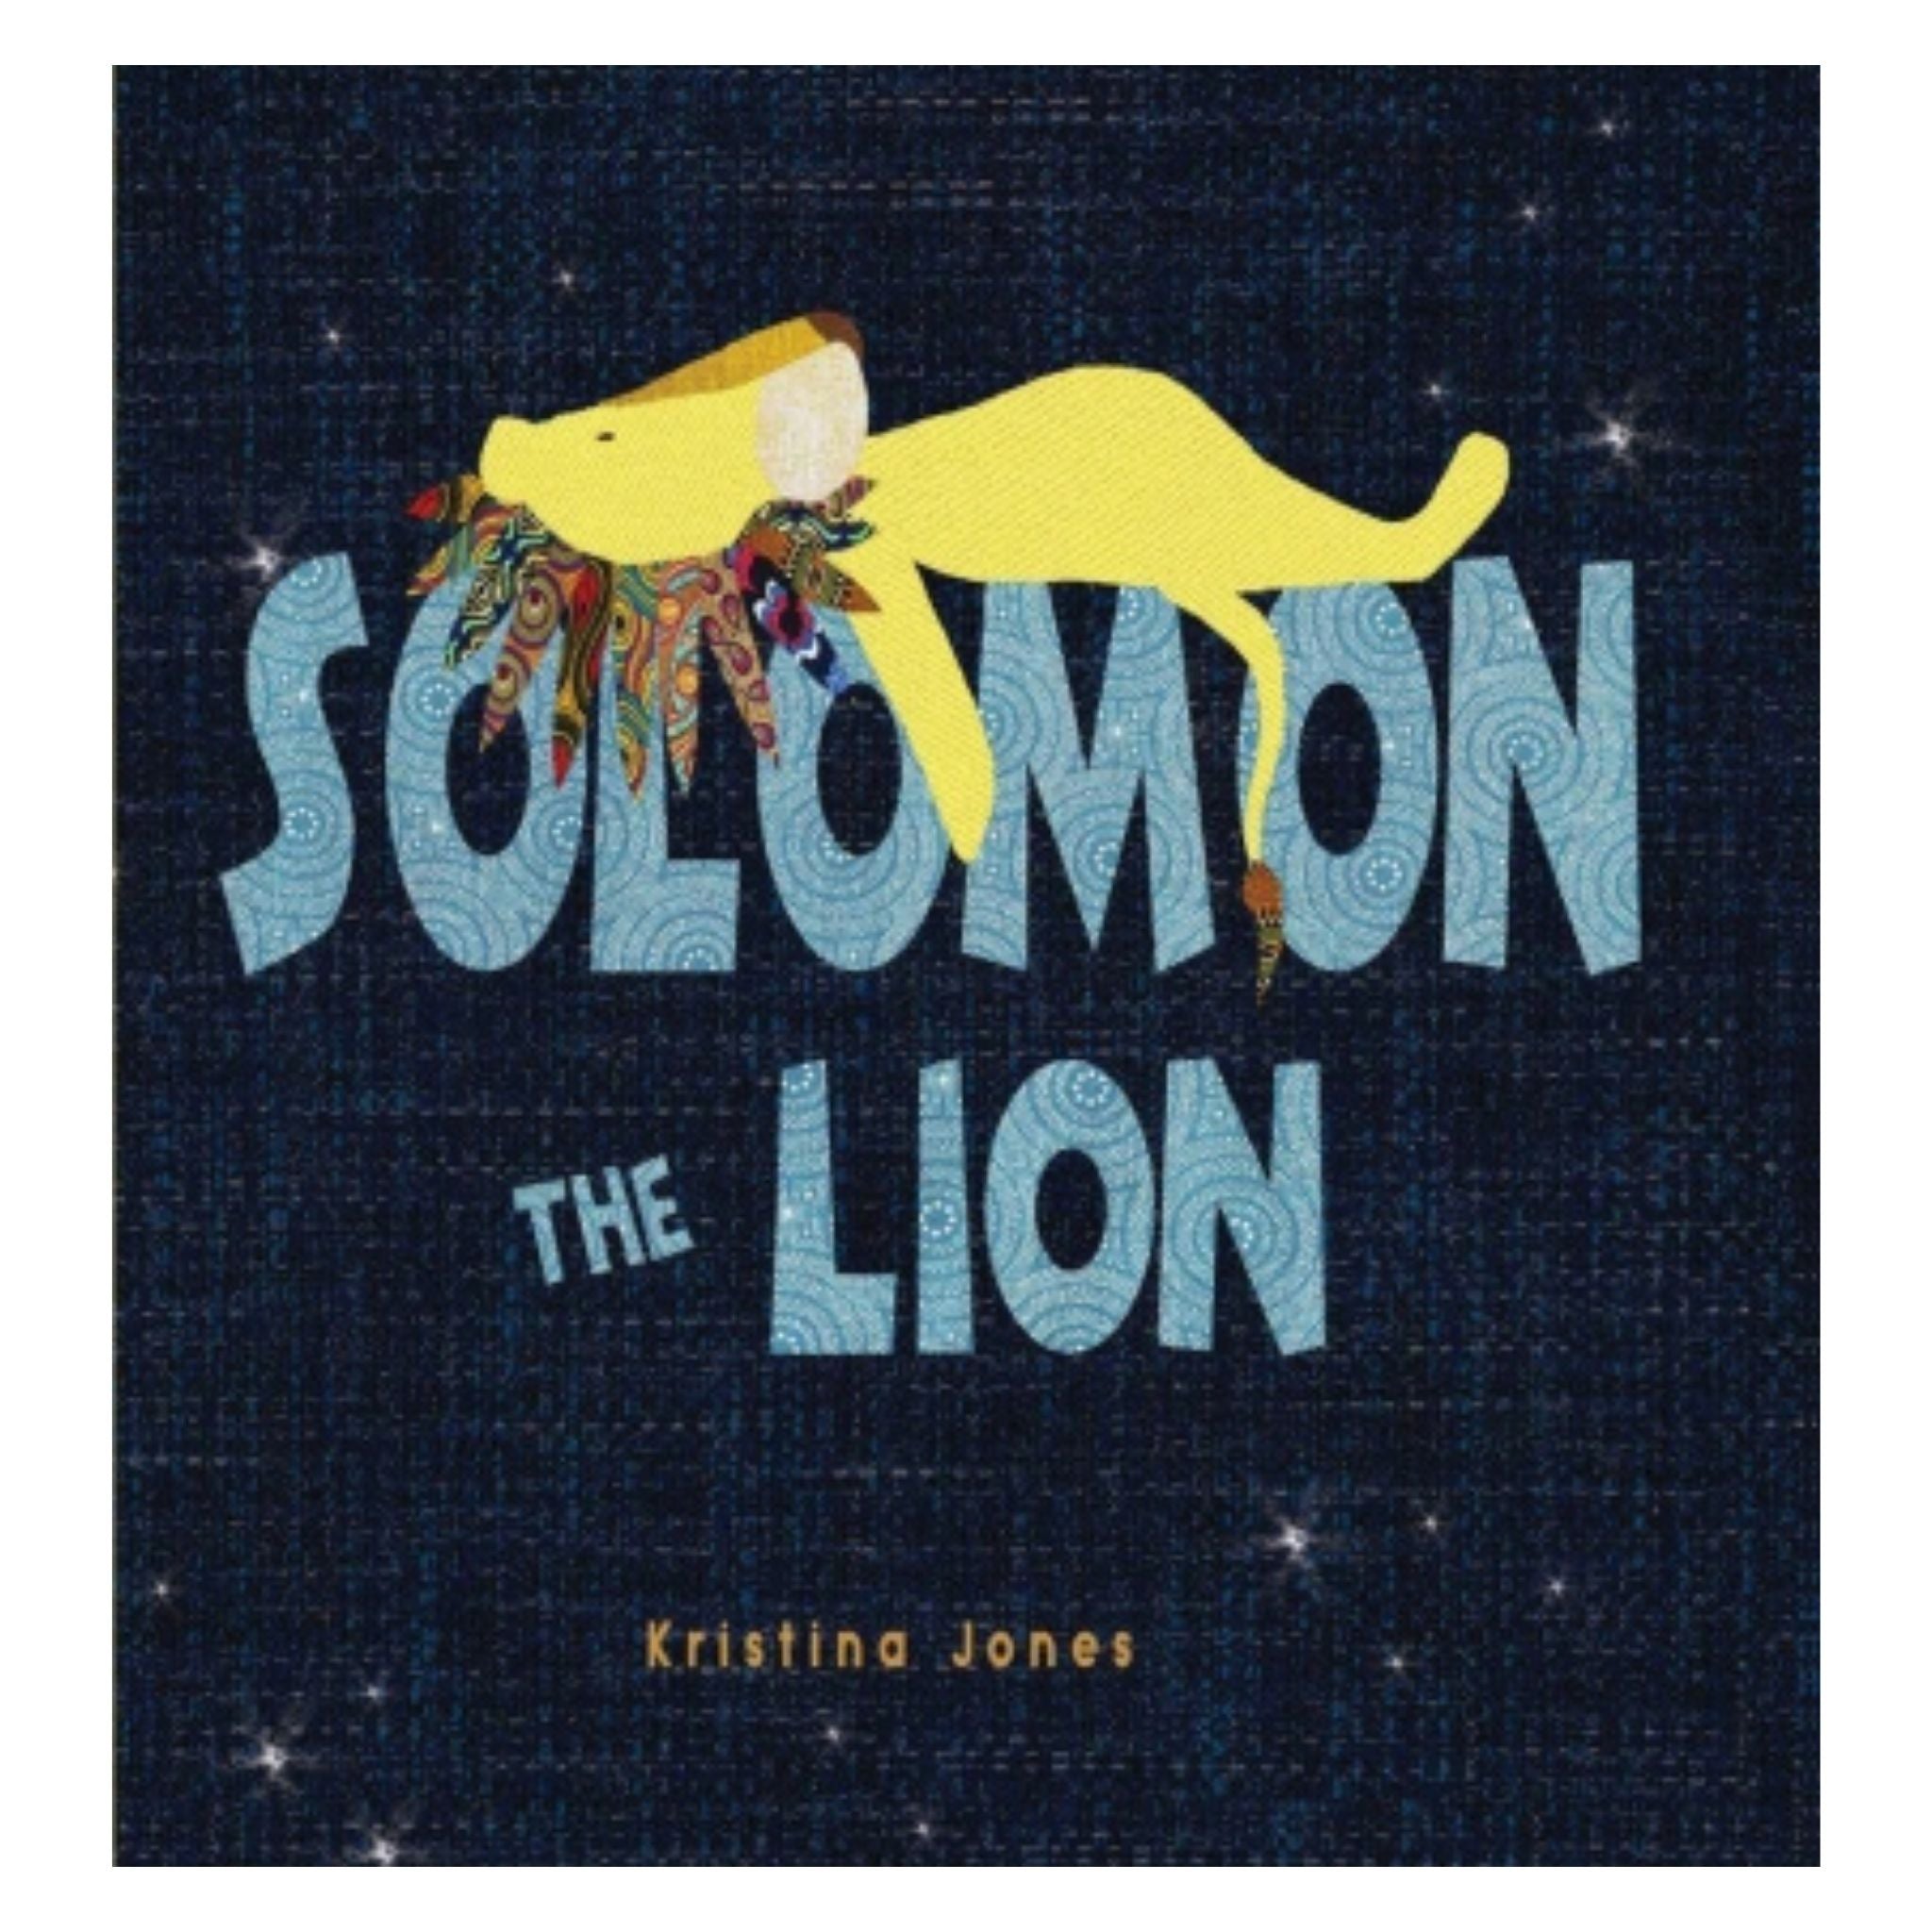 Solomon the Lion